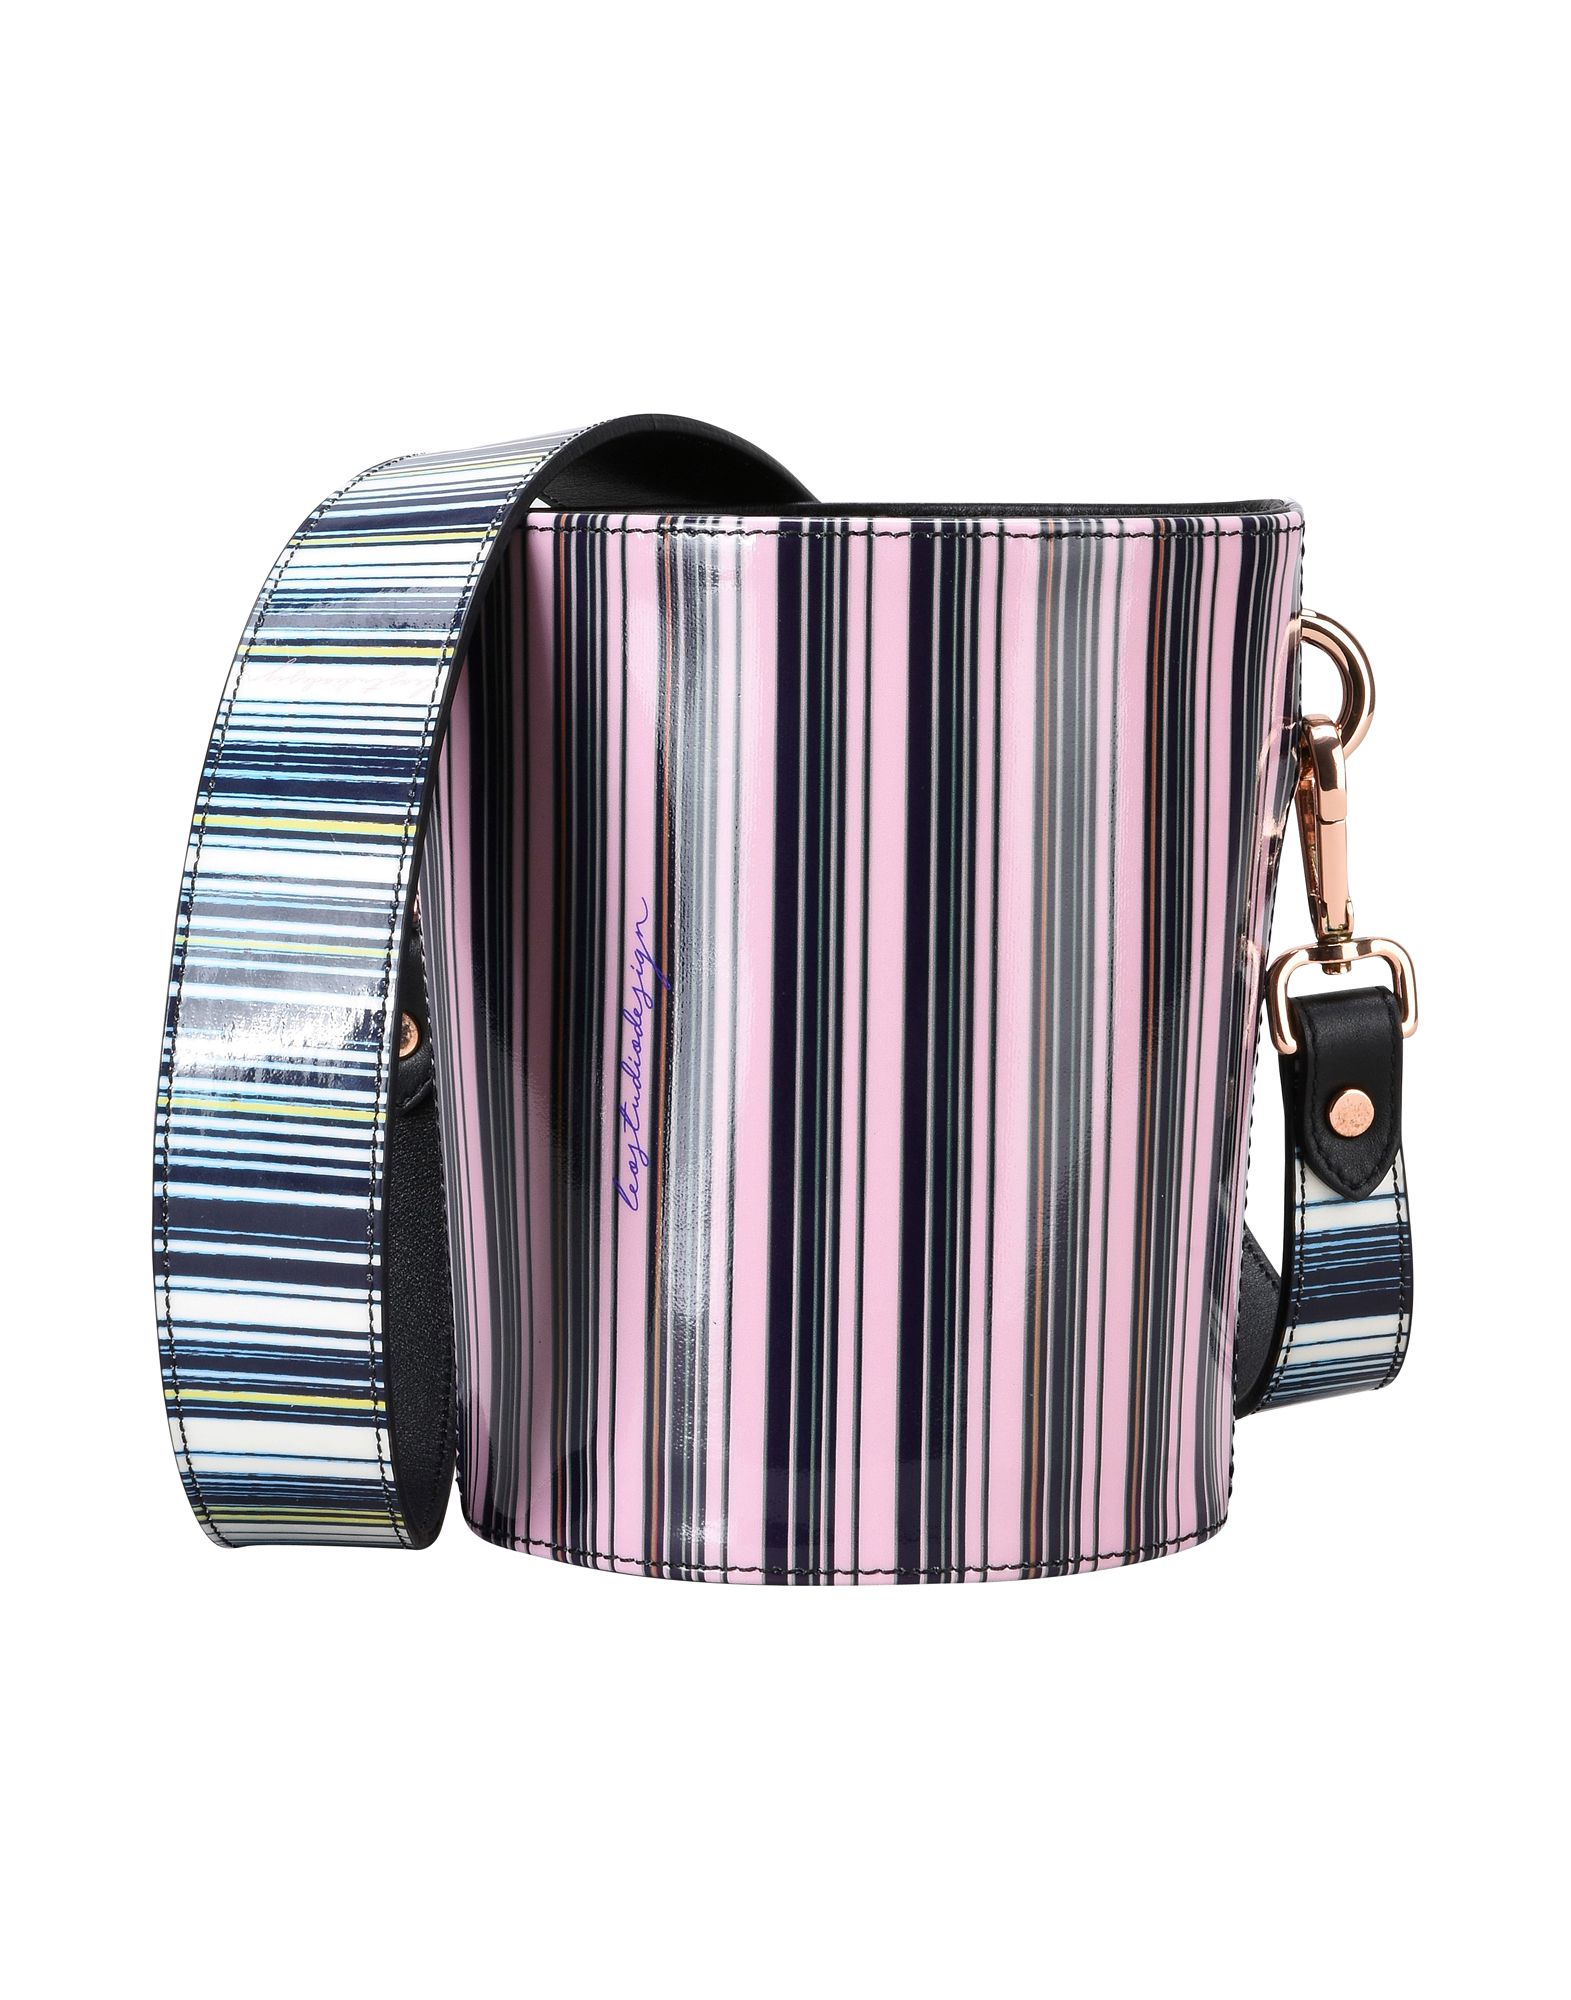 《期間限定セール開催中!》LEO STUDIO DESIGN レディース メッセンジャーバッグ ピンク 紡績繊維 MINI BUCKET BAG